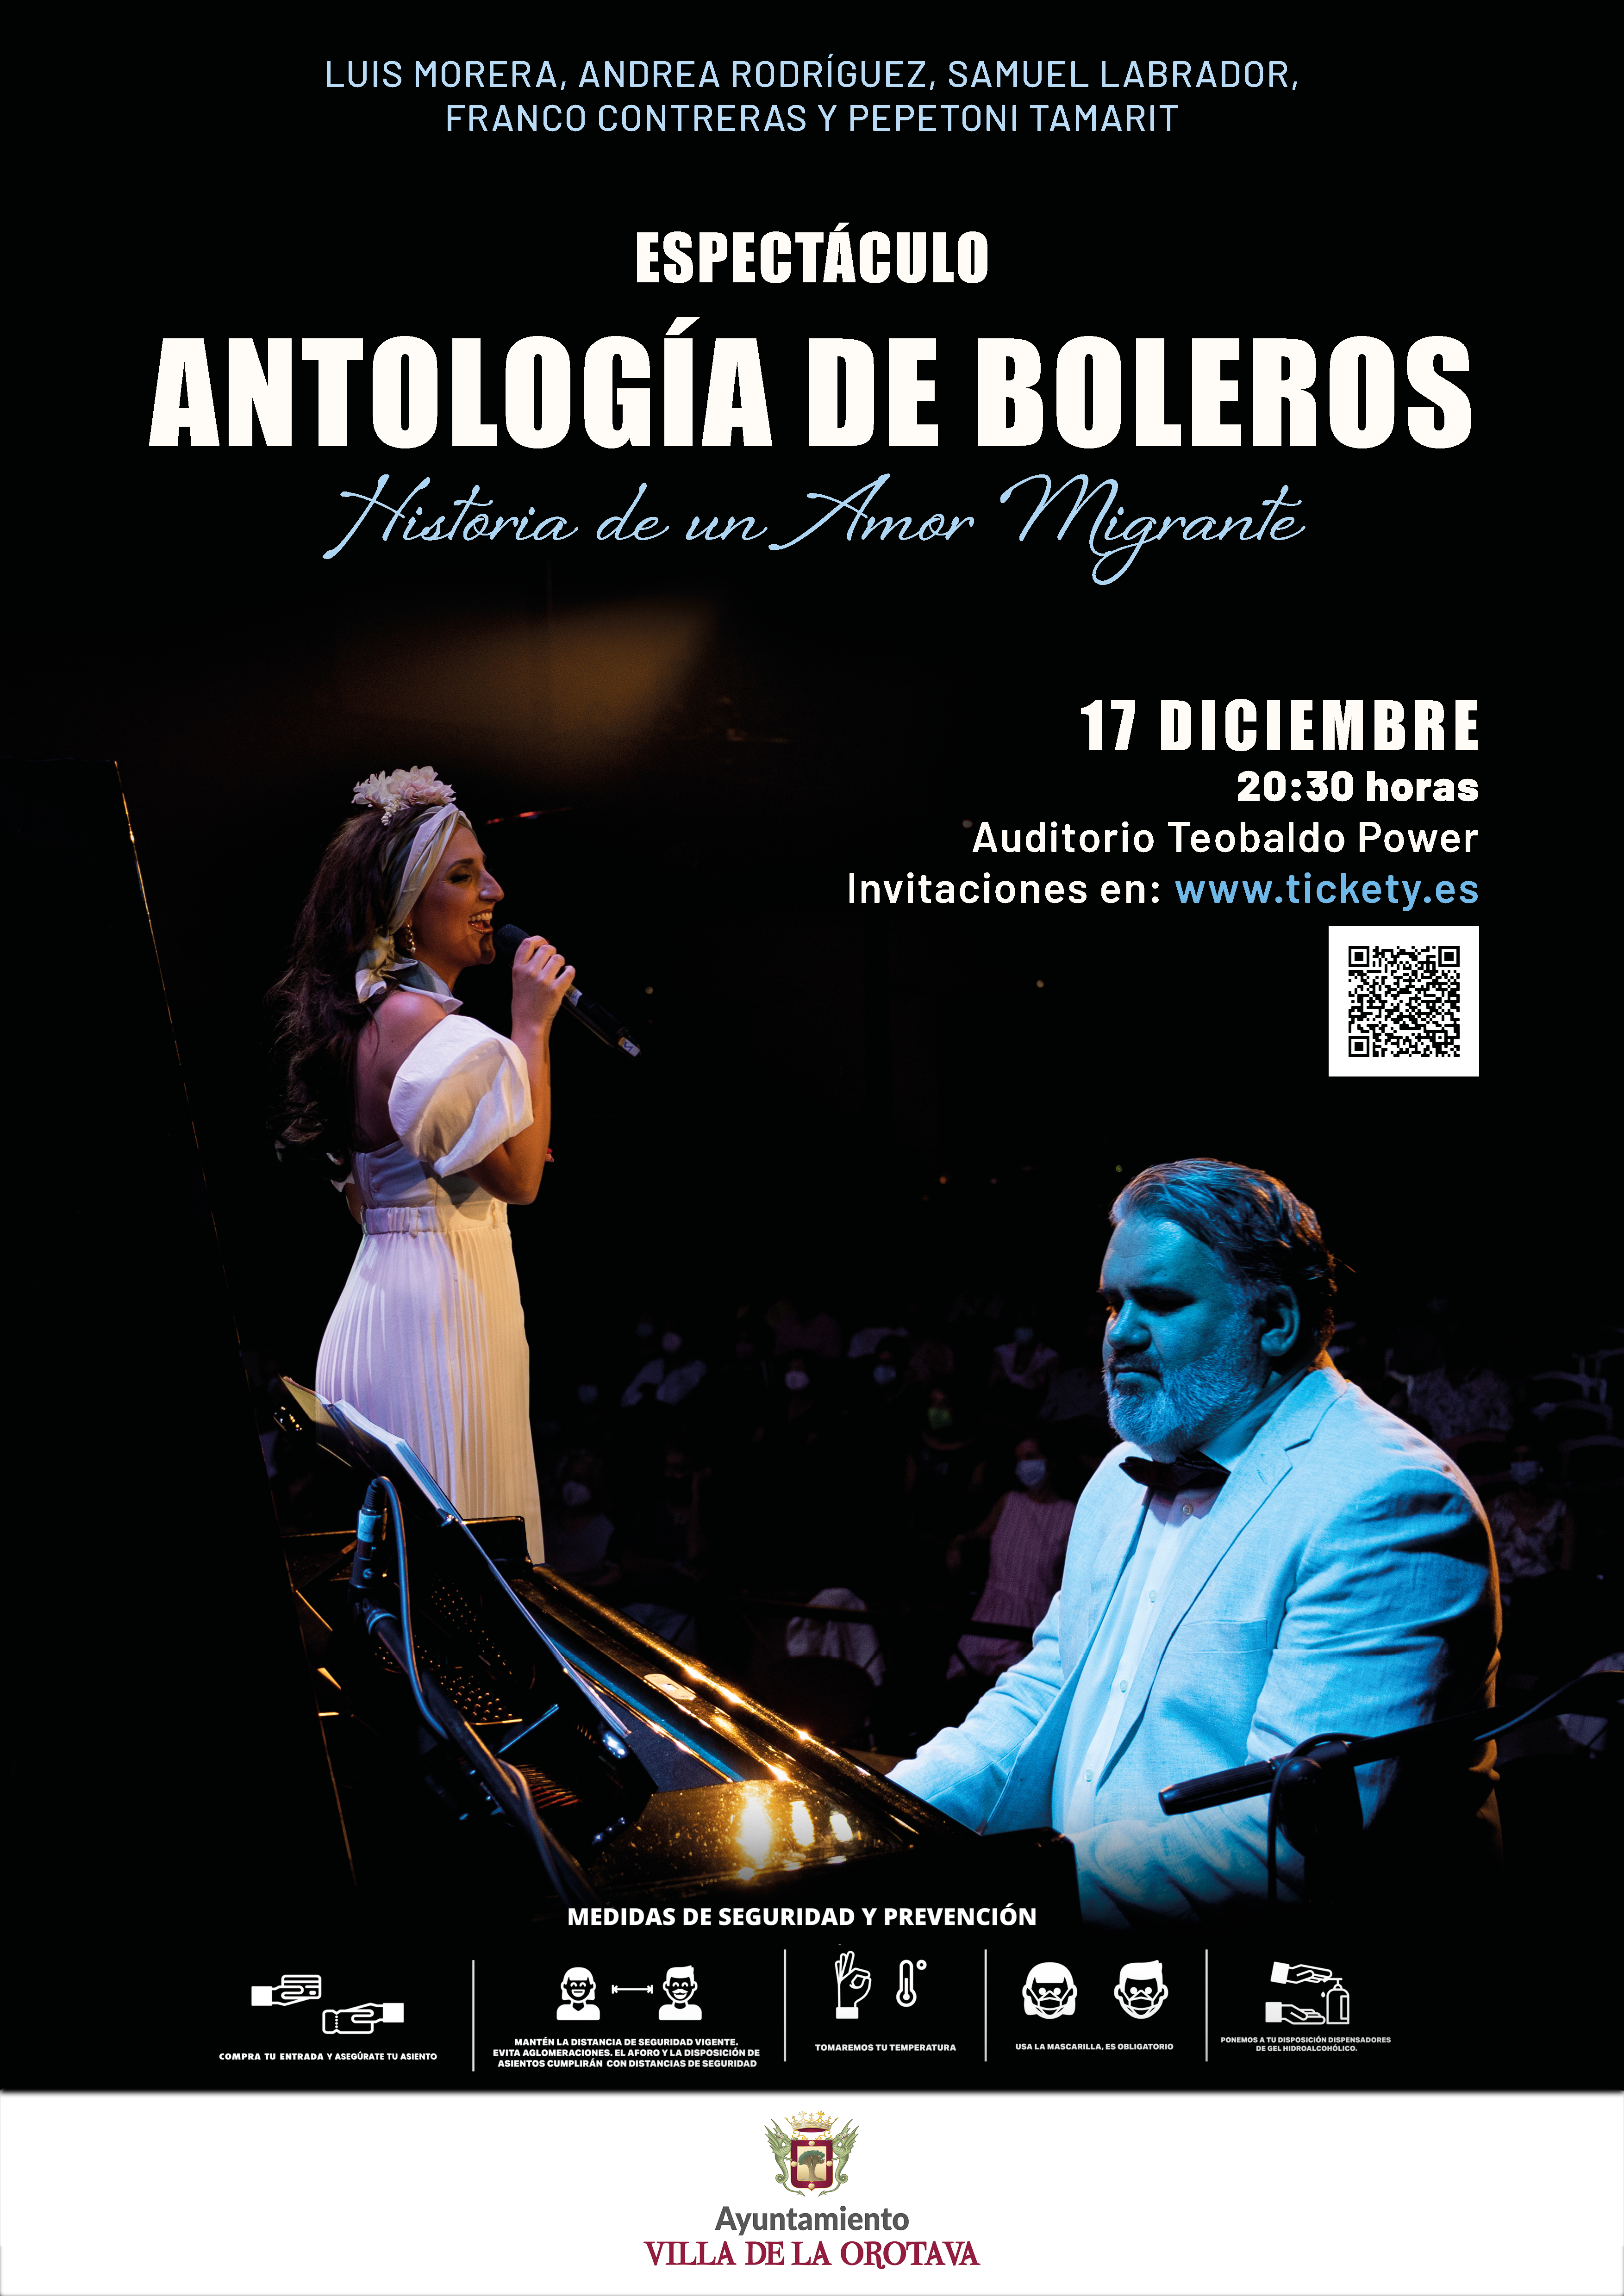 El 17 de diciembre en el Auditorio Teobaldo Power, a partir de las 20:30 horas